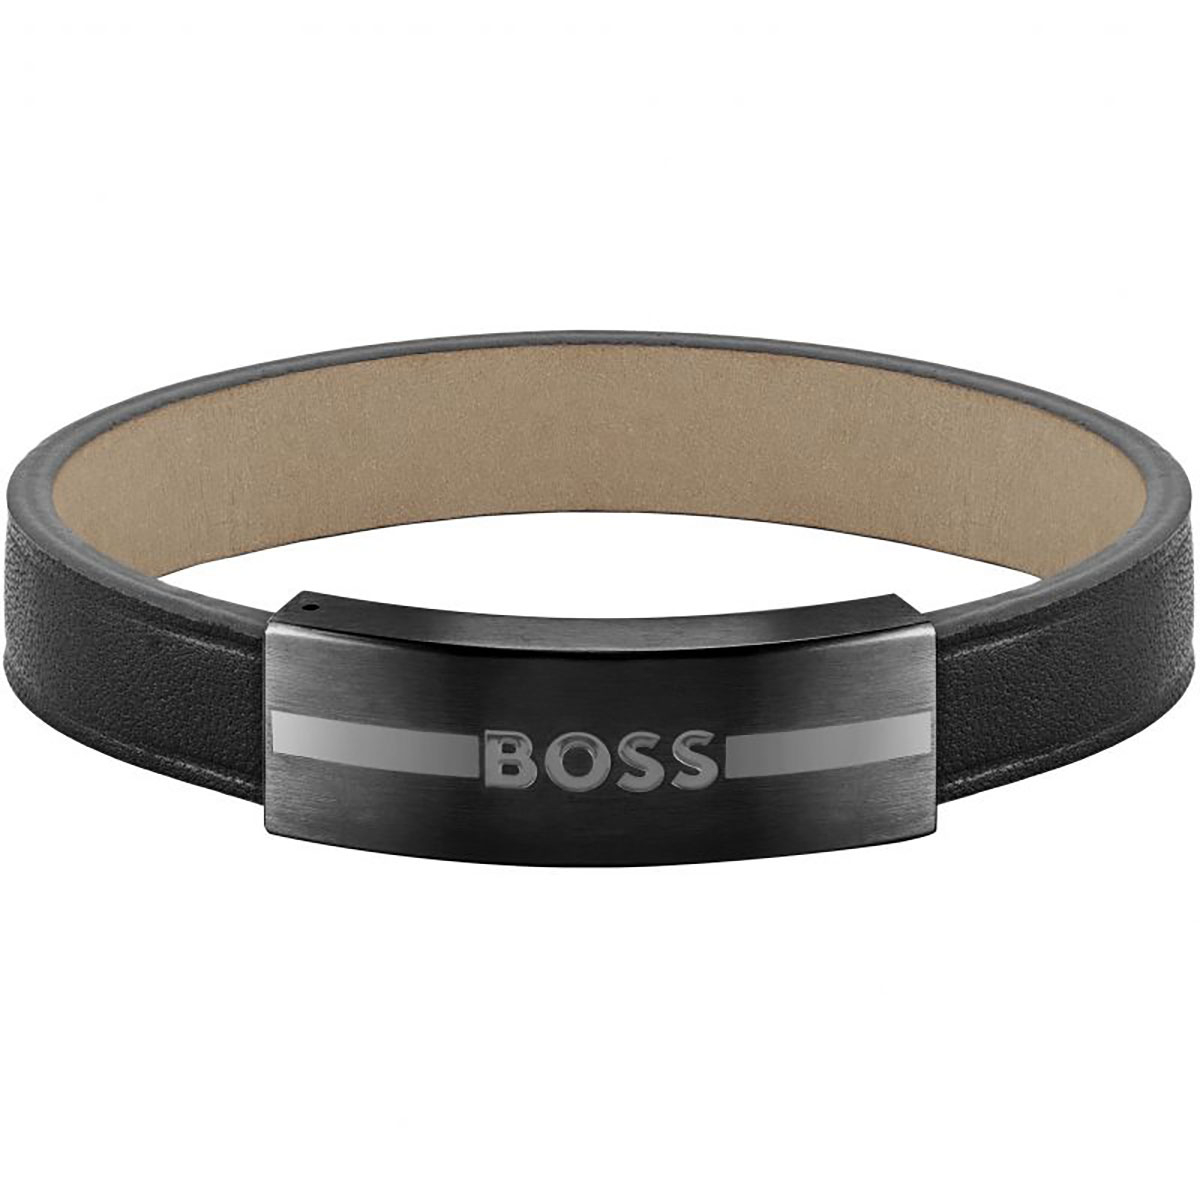 Boss Armband für Herren - 1580505M online kaufen